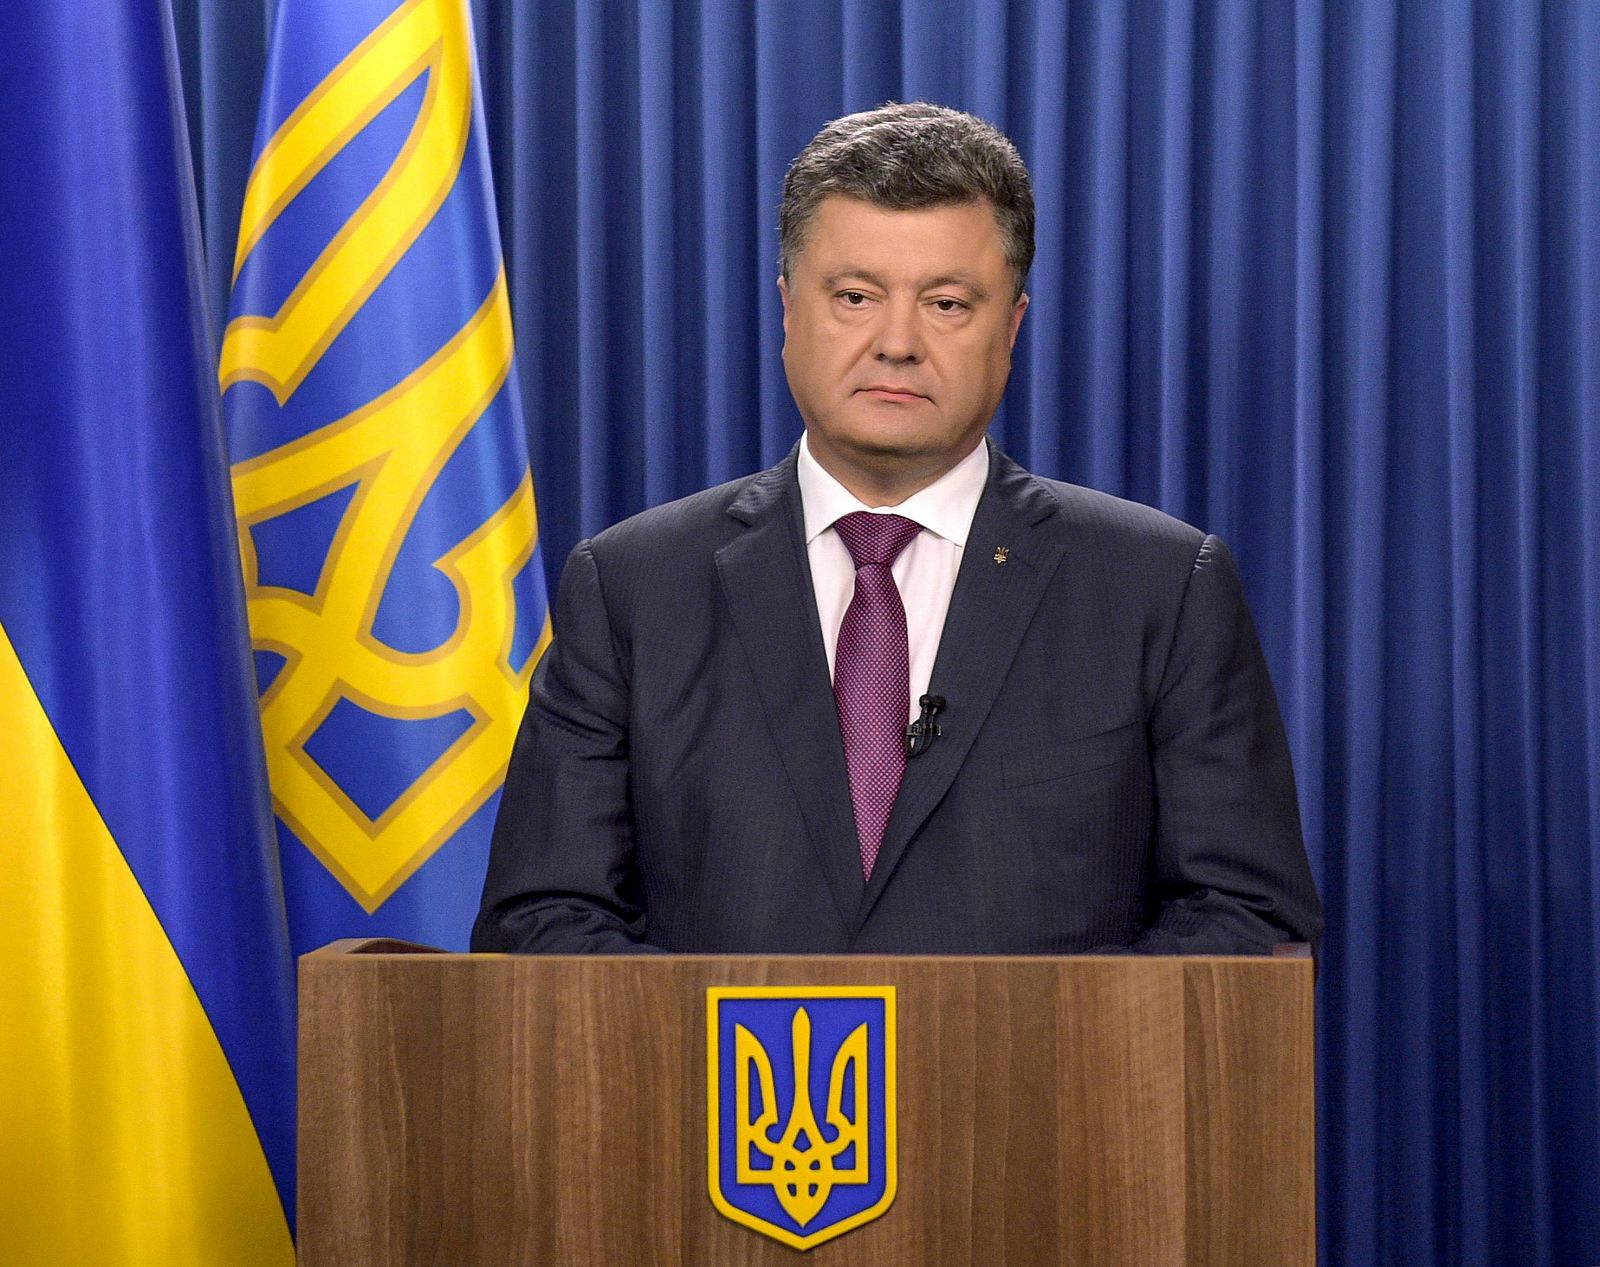 El presidente ucraniano Petro Poroshenko disuelve el parlamento